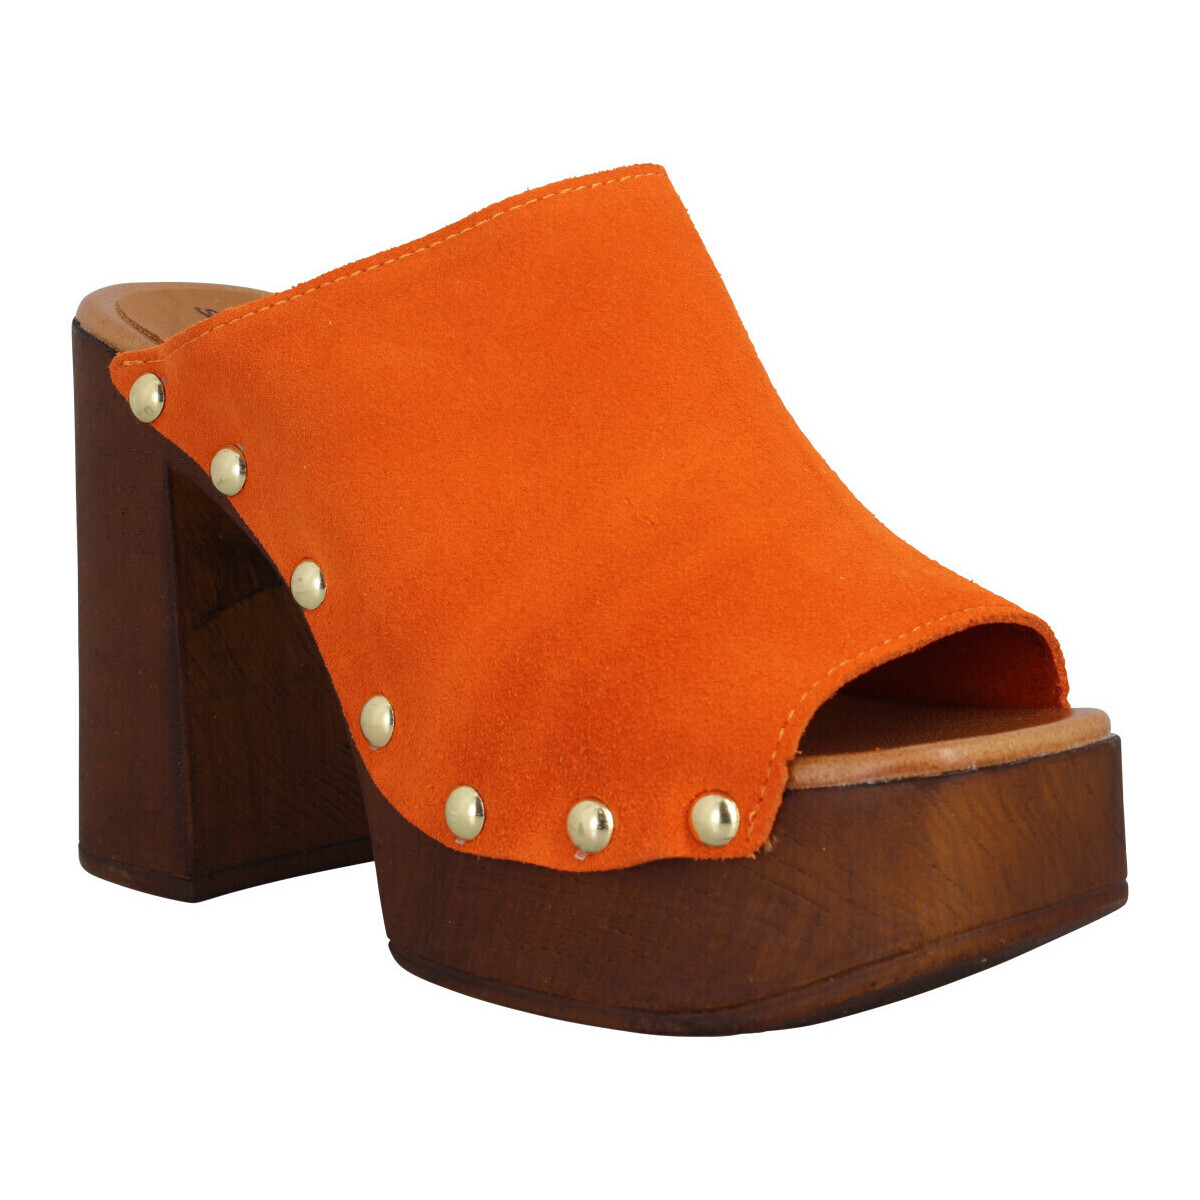 kengät Naiset Sandaalit ja avokkaat Sandro Rosi 7551 Velours Femme Arancio Oranssi